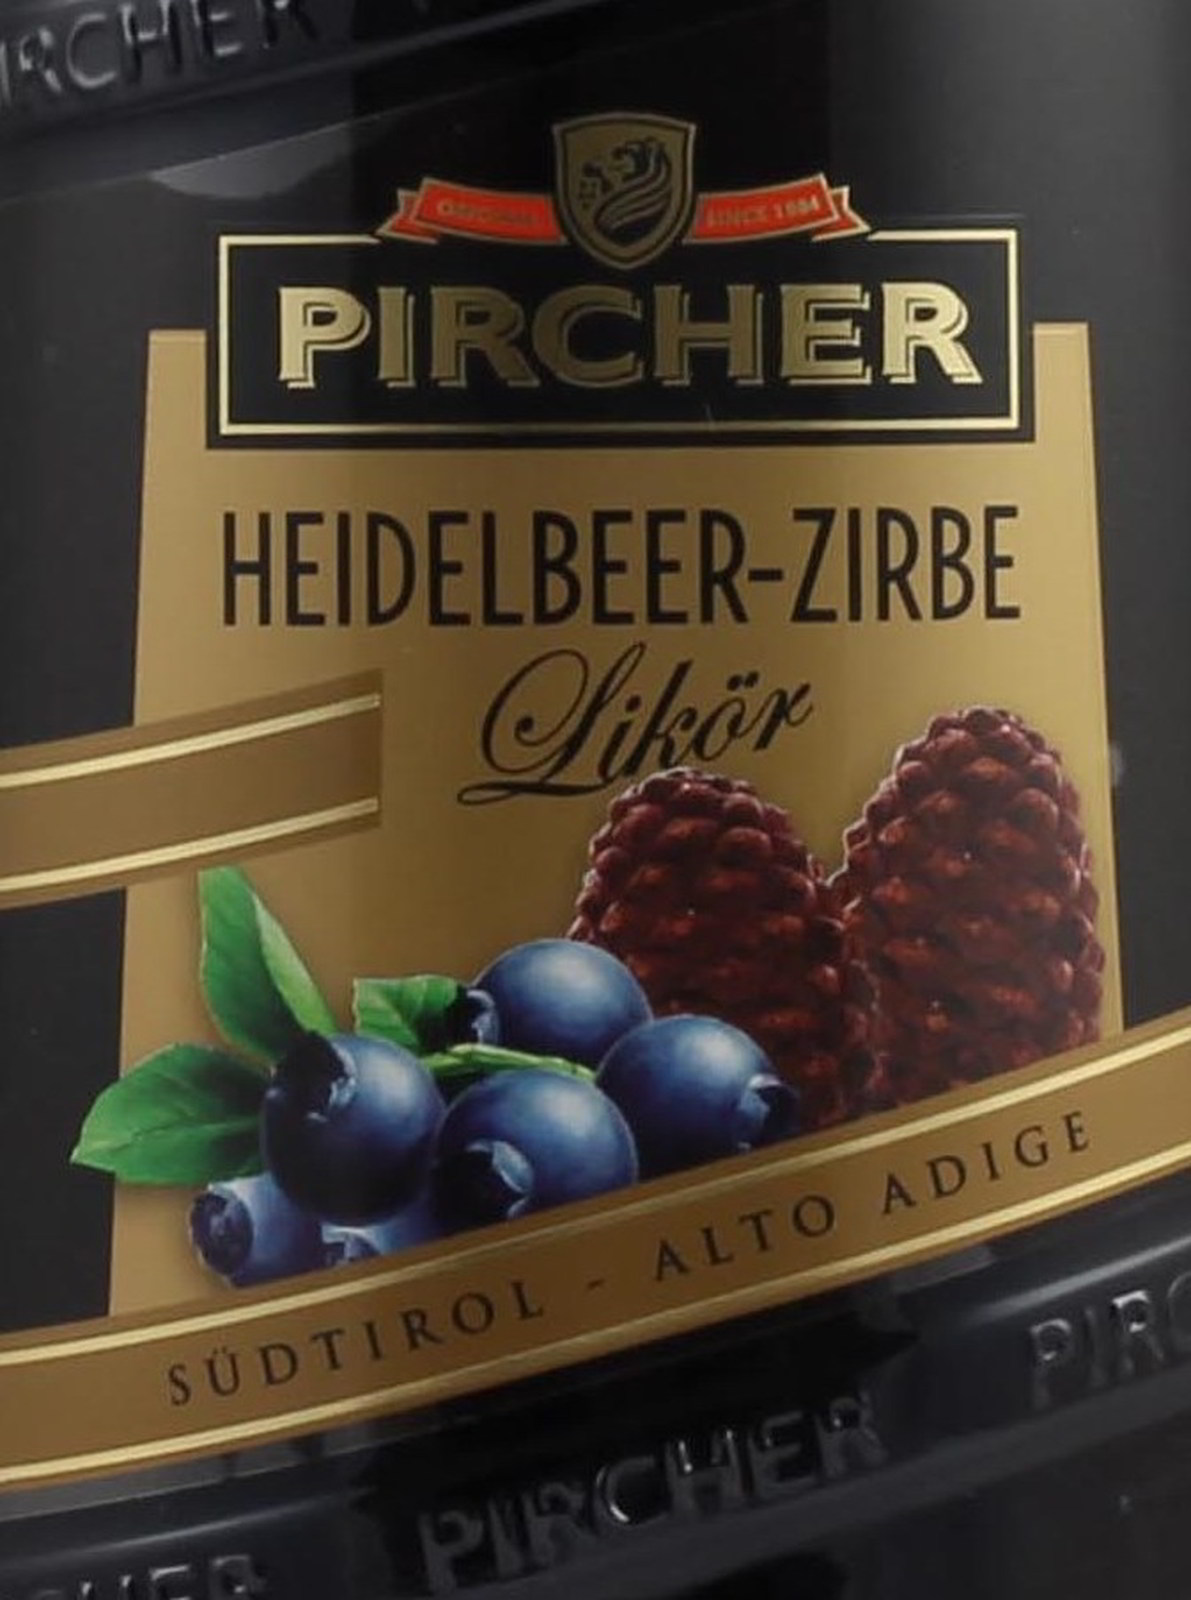 Pircher Heidelbeerlikör mit Zirbe im Shop kaufen.